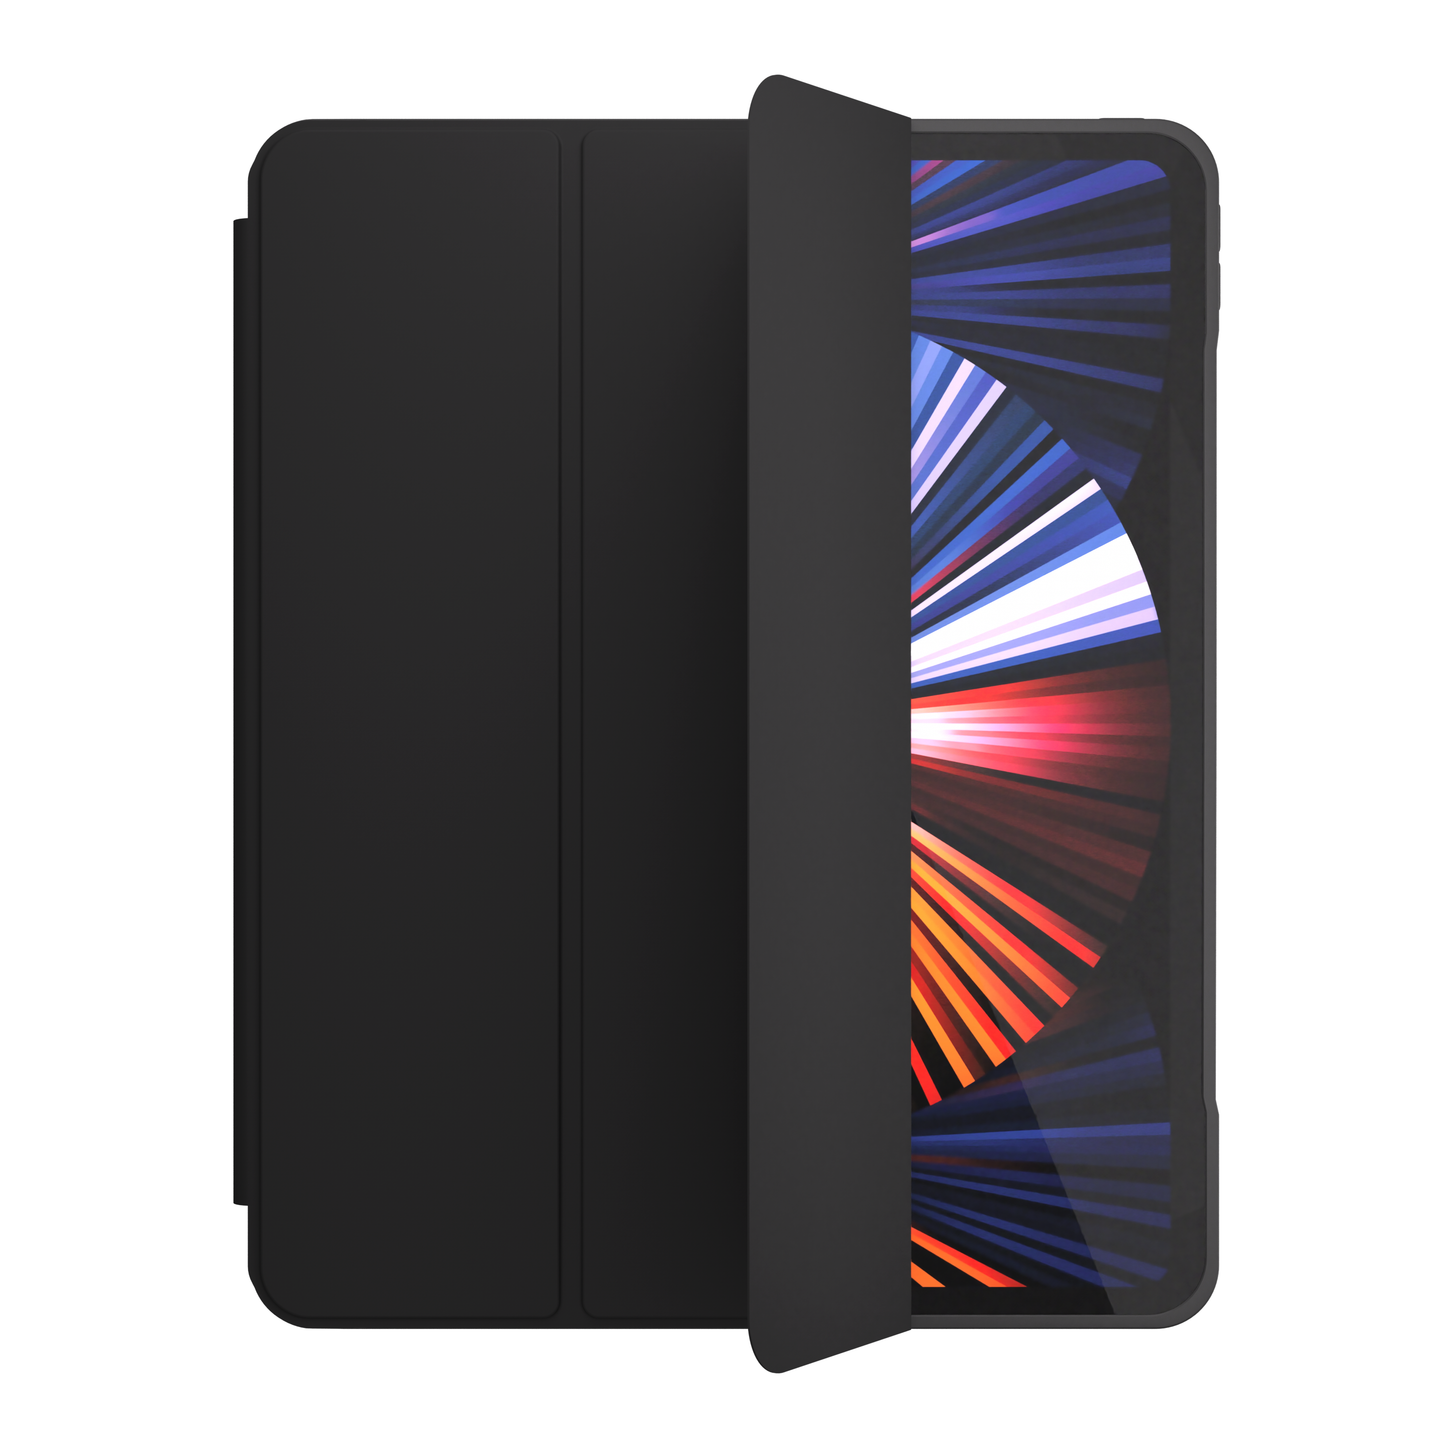 NEXT.ONE Roll case für iPad Pro 12,9" 2. Generation und neuer - Schwarz